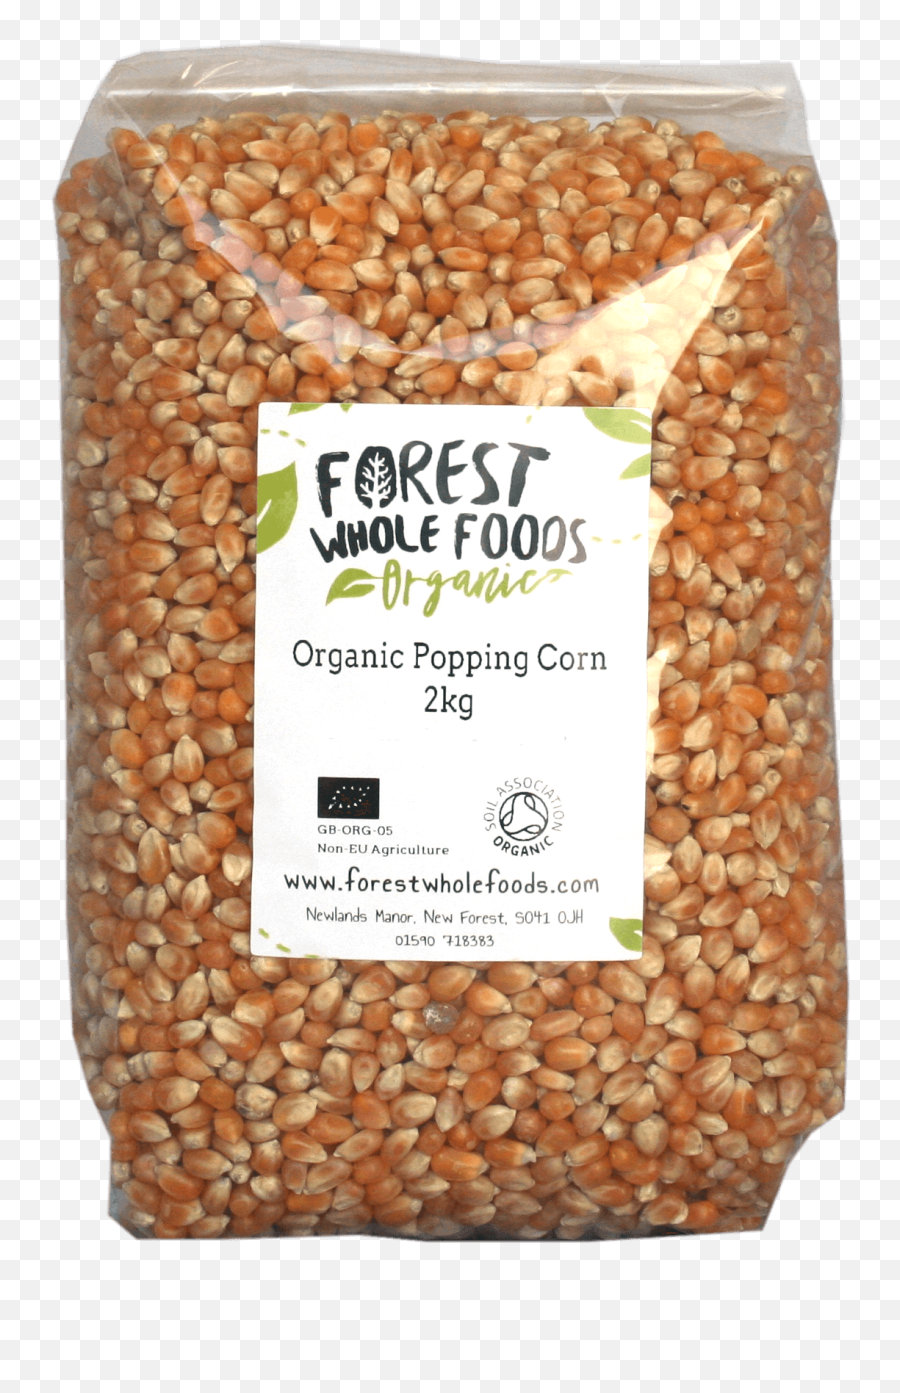 Organic Popcorn Kernels - Organic Popcorn Kernels Png,Popcorn Kernel Png